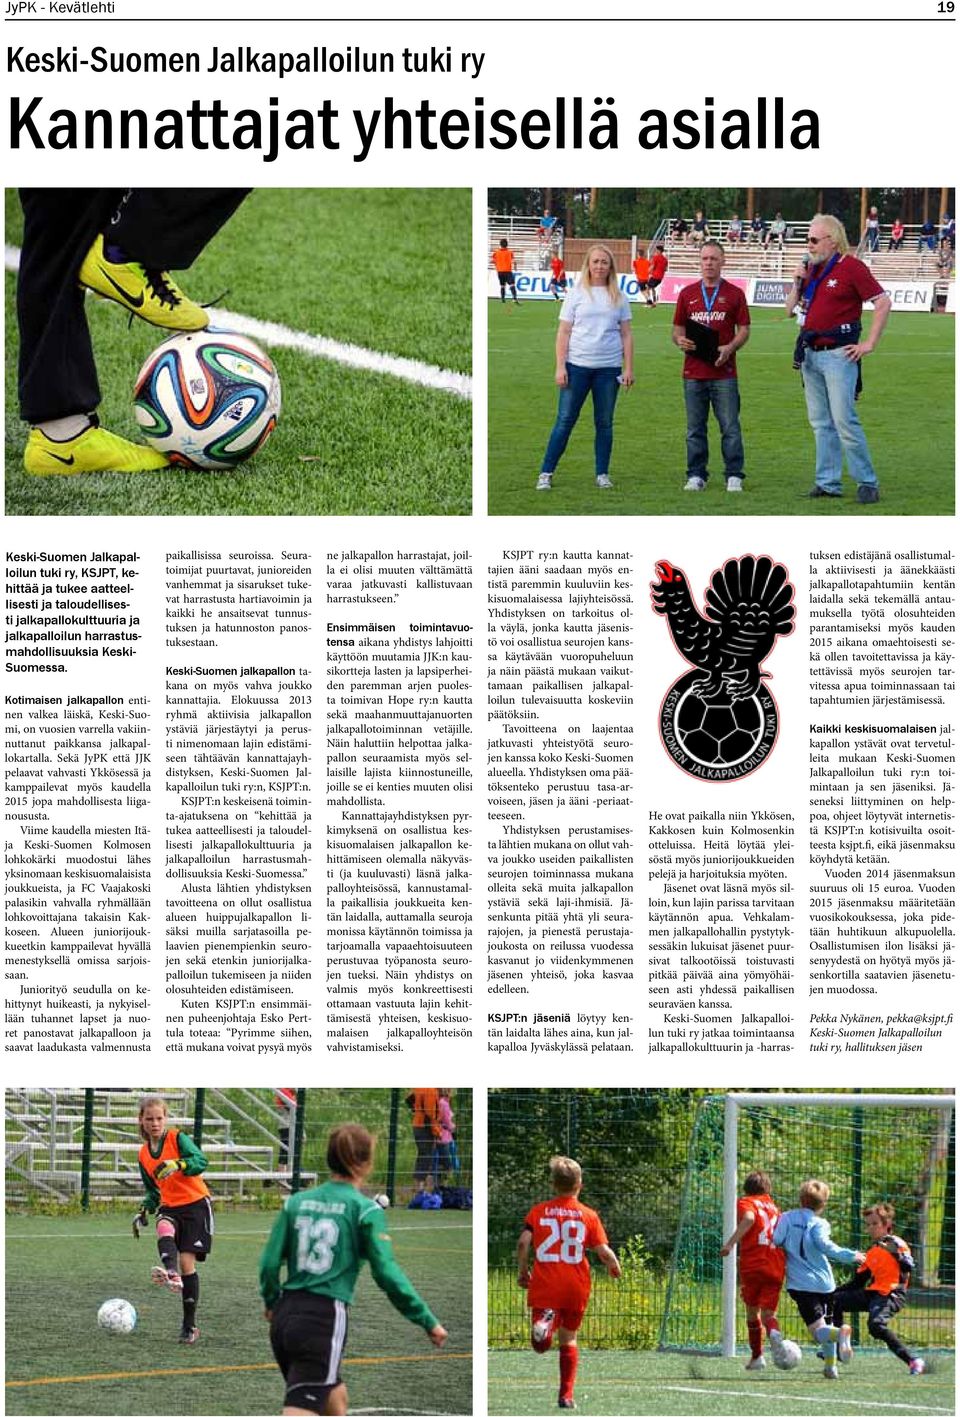 Kotimaisen jalkapallon entinen valkea läiskä, Keski-Suomi, on vuosien varrella vakiinnuttanut paikkansa jalkapallokartalla.